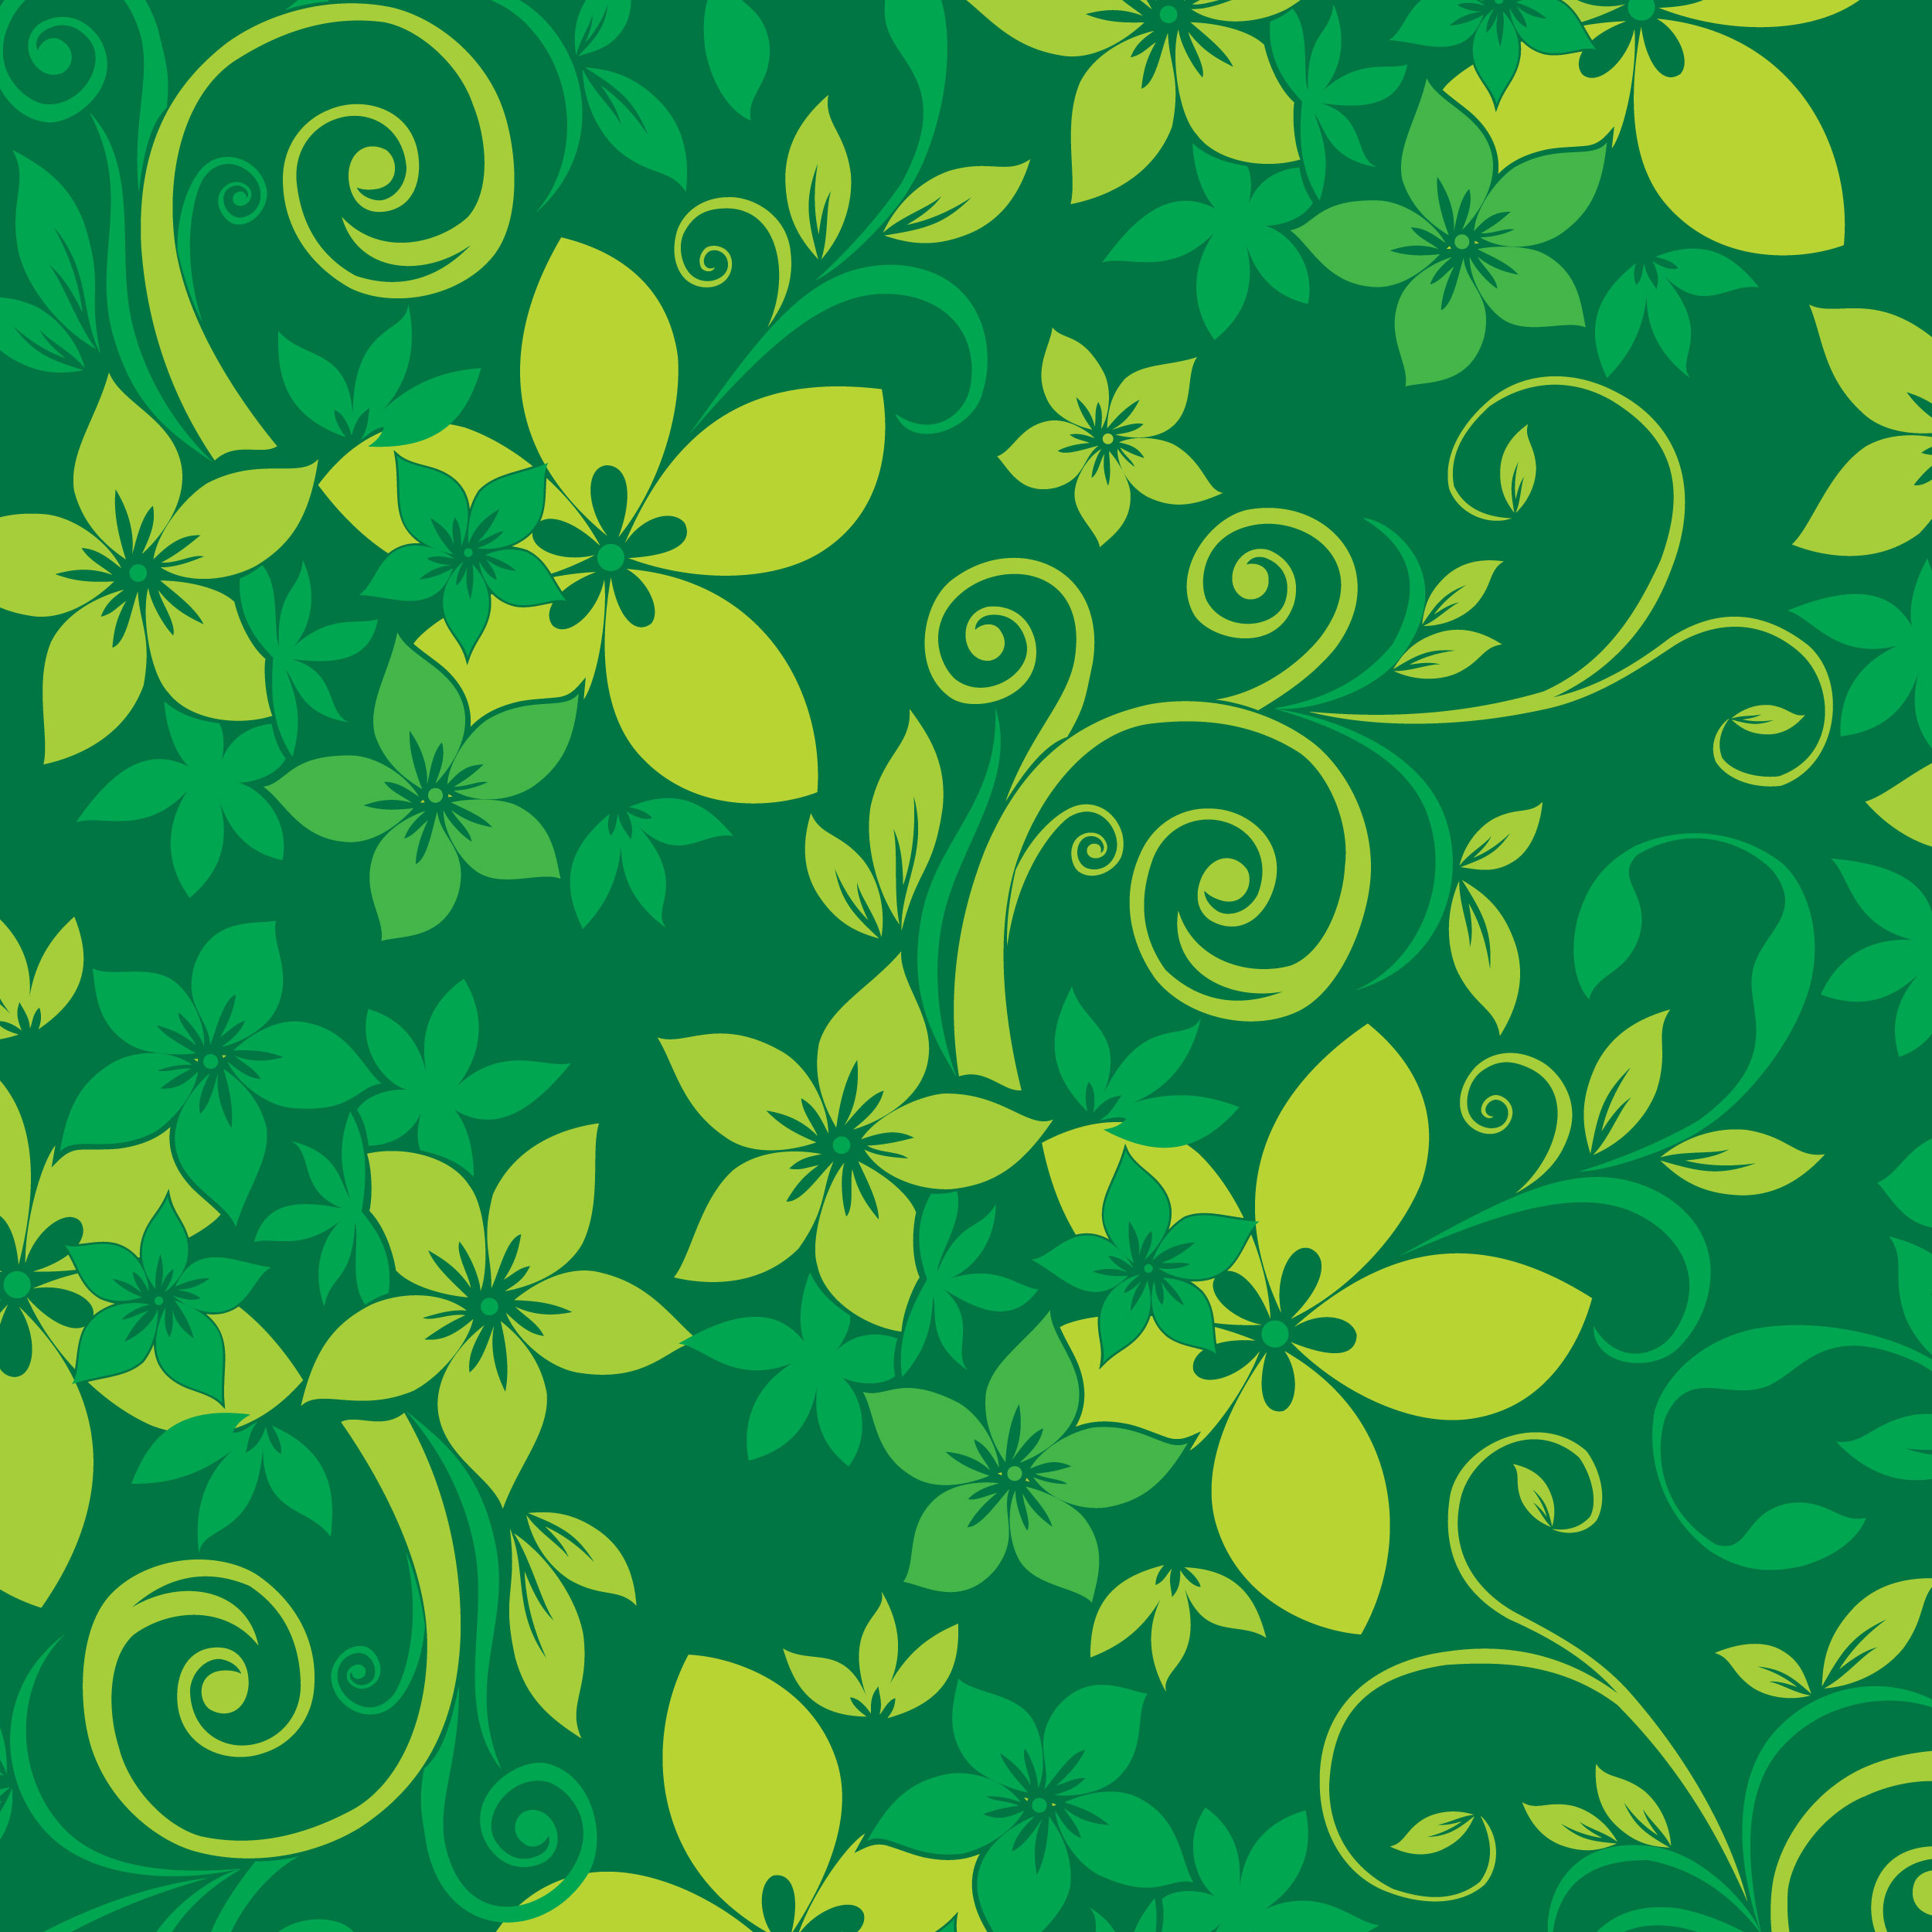 緑色の花のイラスト フリー素材 背景 壁紙no 191 緑 茎葉